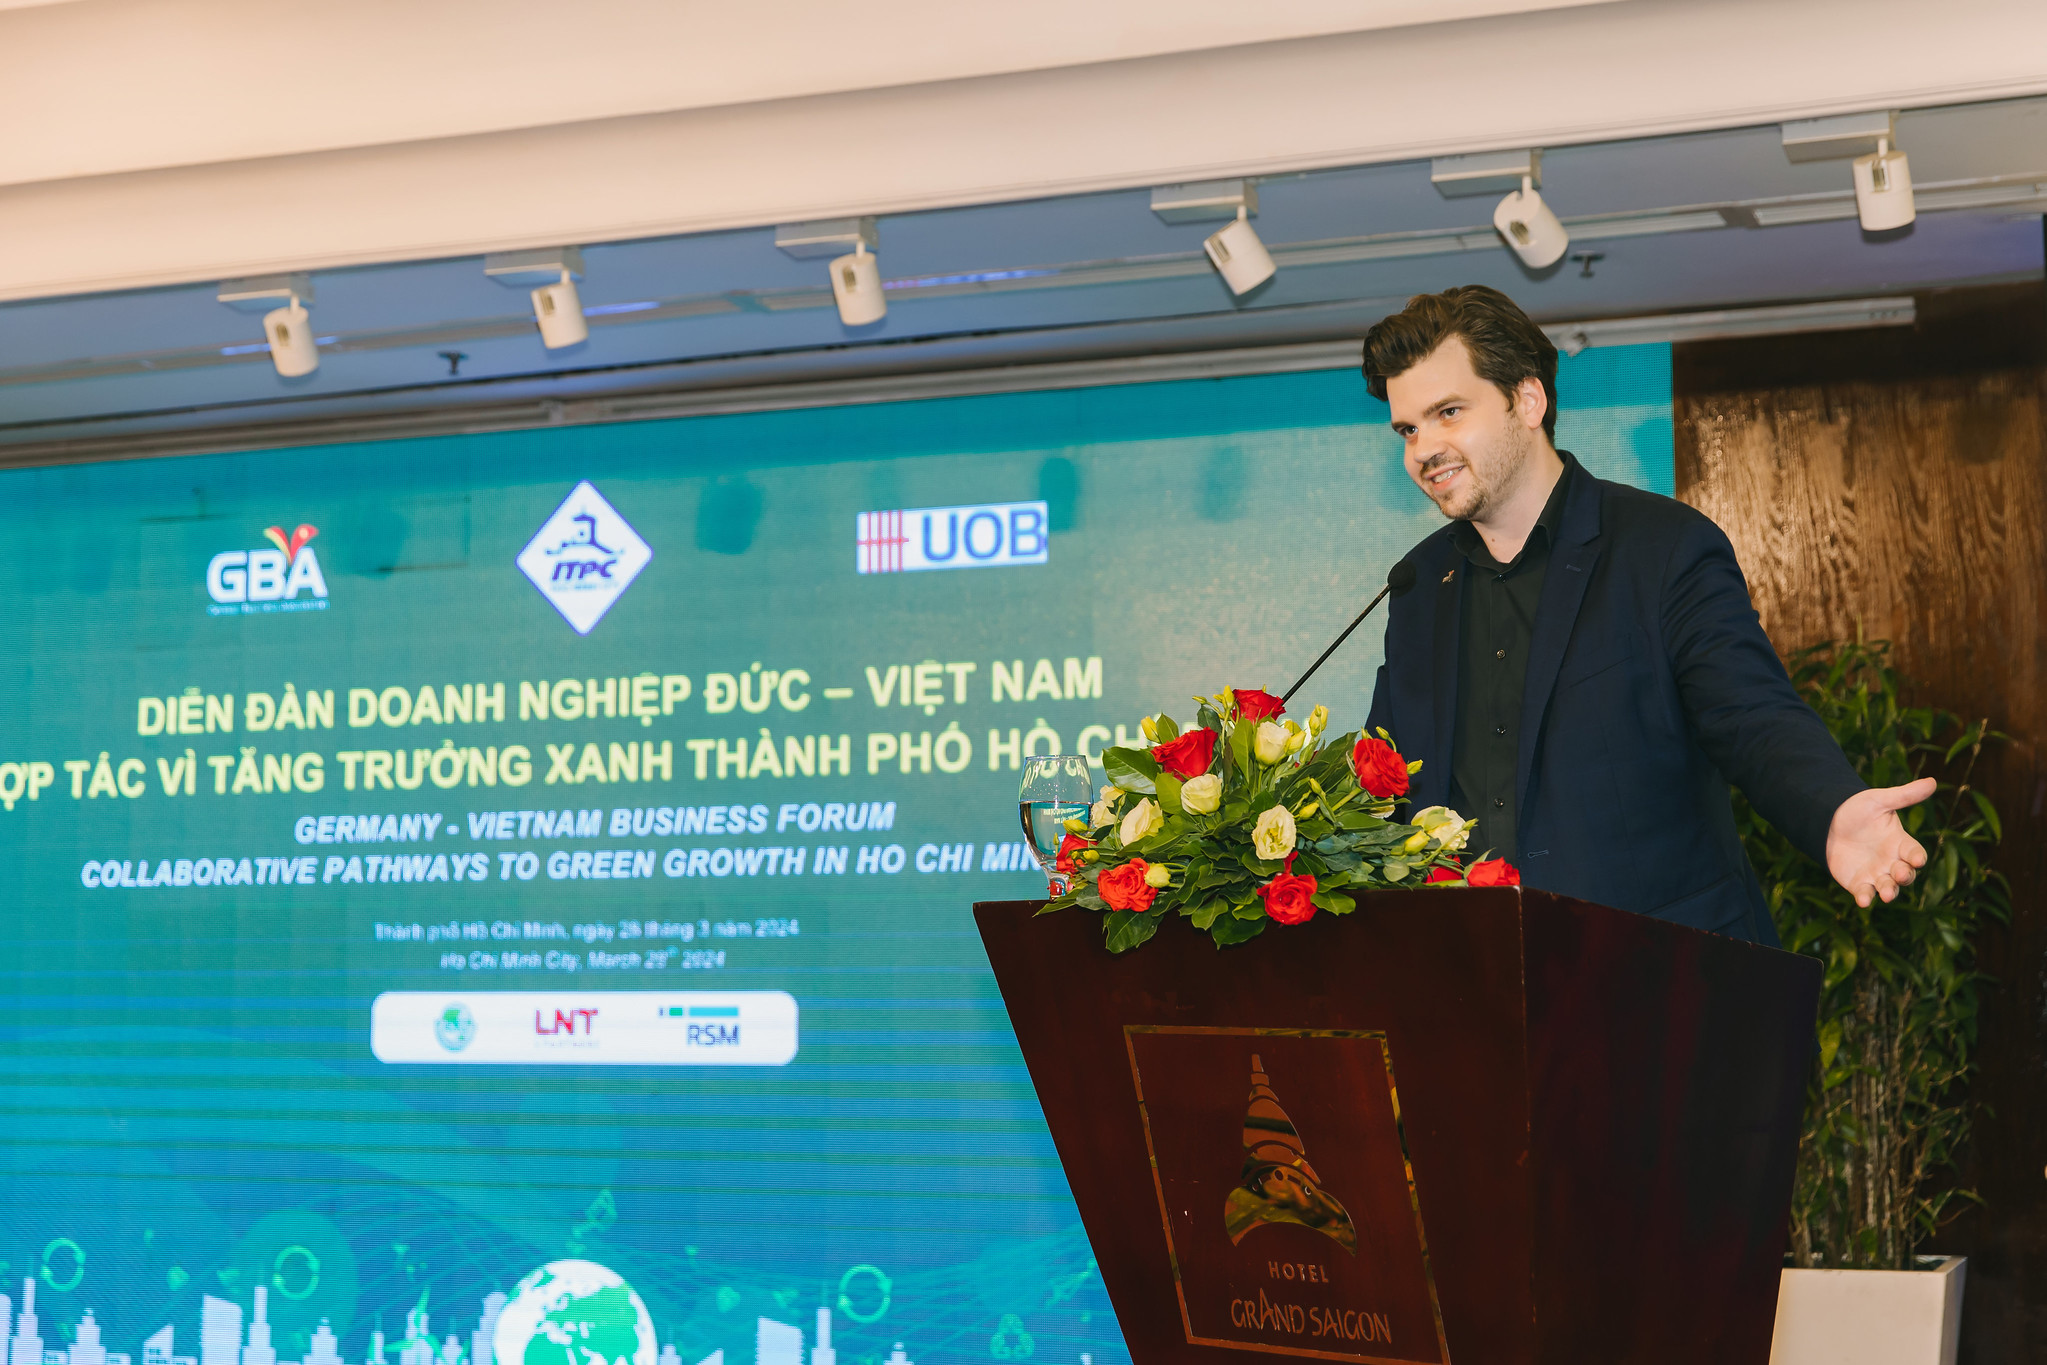 Chủ tịch GBA tại Diễn đàn doanh nghiệp Đức - Việt Nam hợp tác vì tăng trưởng xanh Tp.HCM